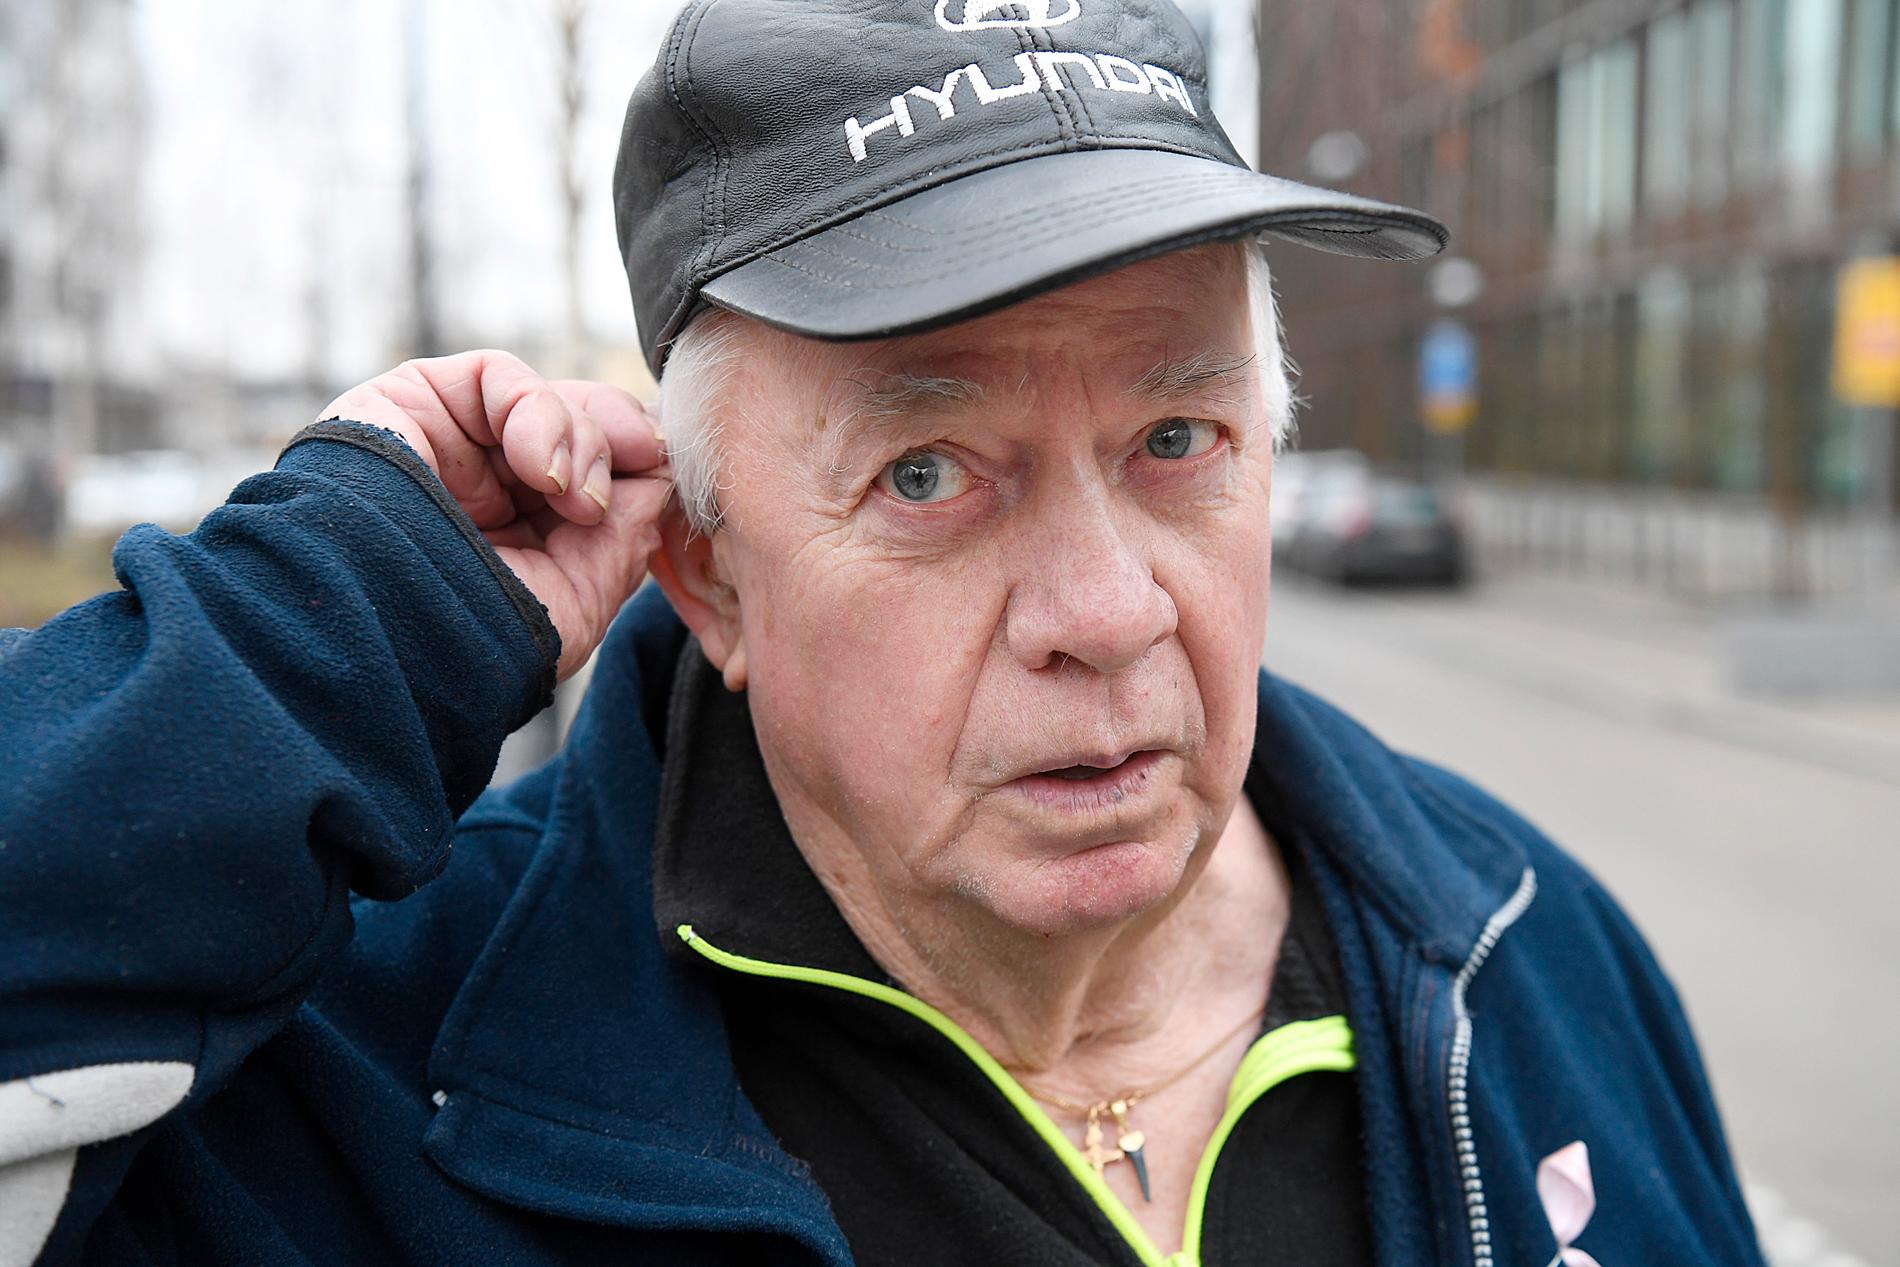 ”Det var bomullstussar i öronen som gällde”, säger Hans Gröndahl, 74, vars hörselskada först 2019 klassades som arbetsskada.